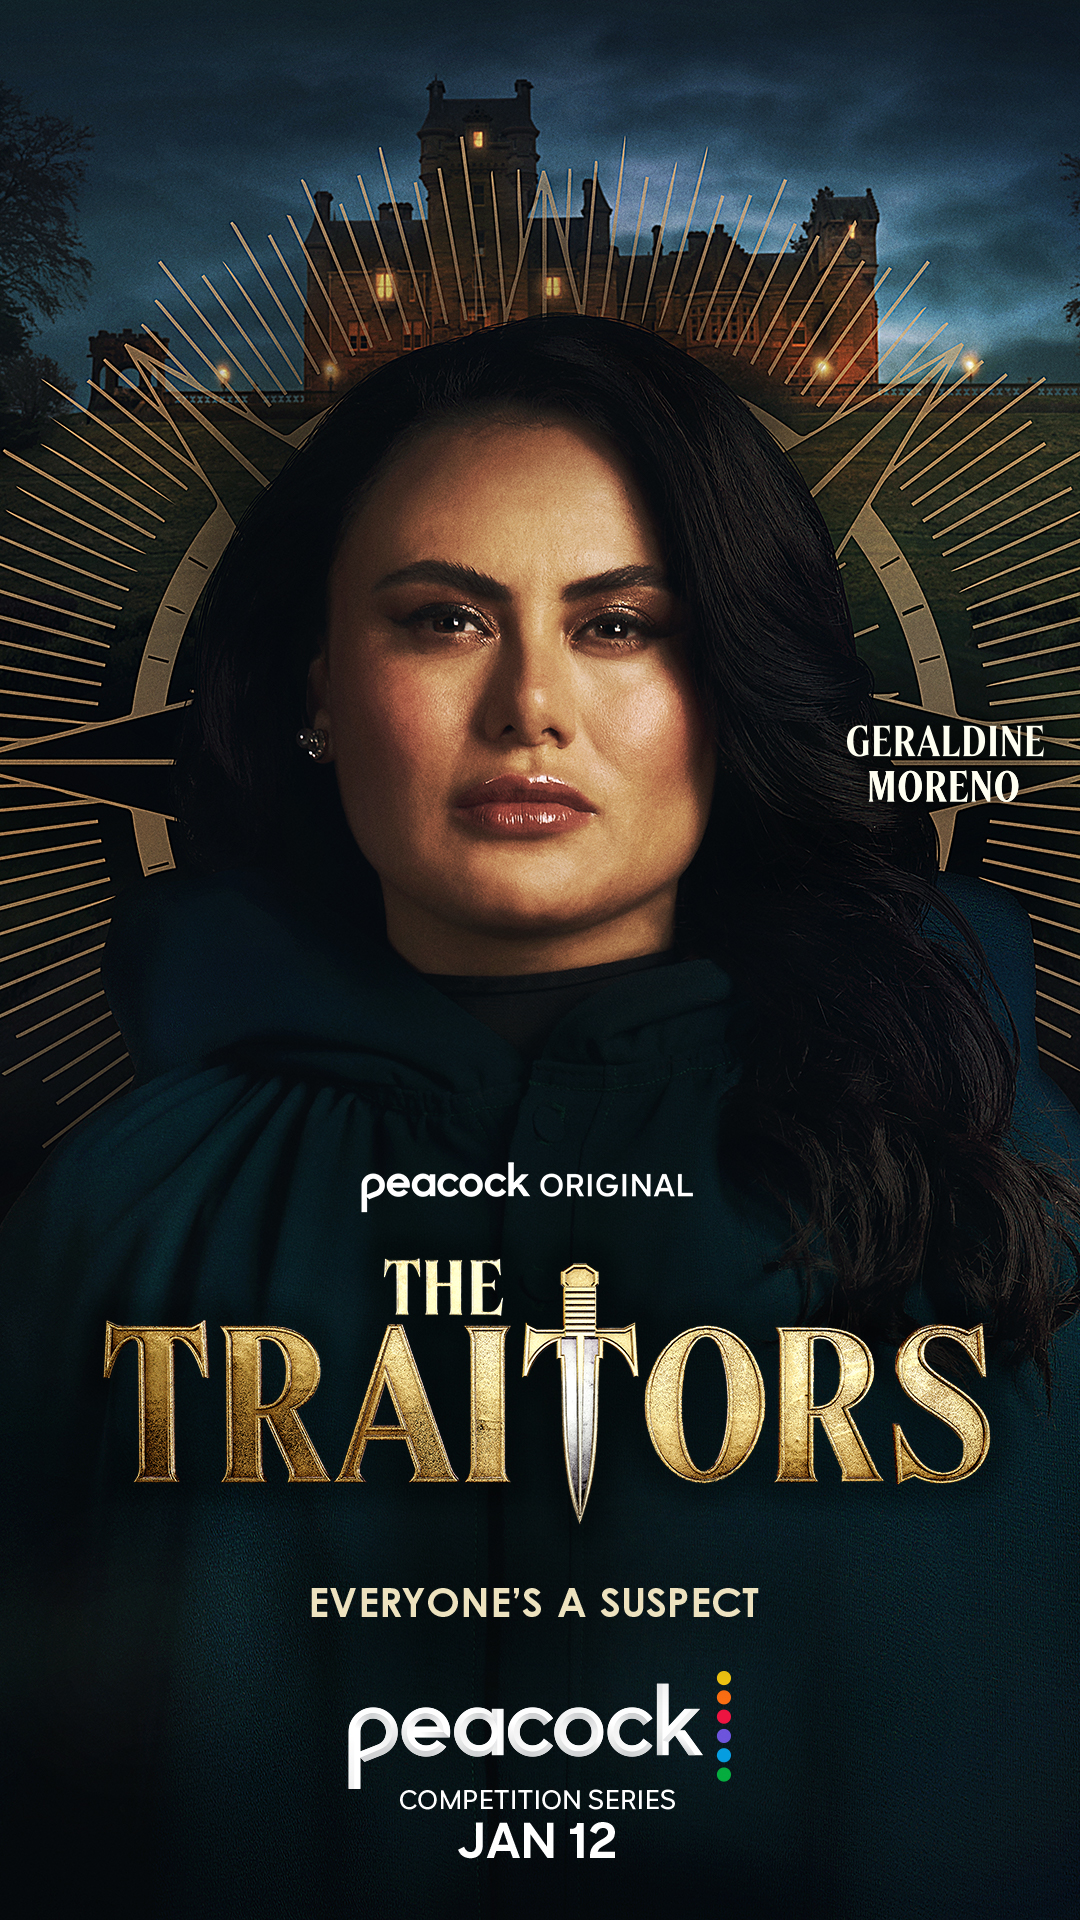 Geraldine Moreno for 'The Traitors'